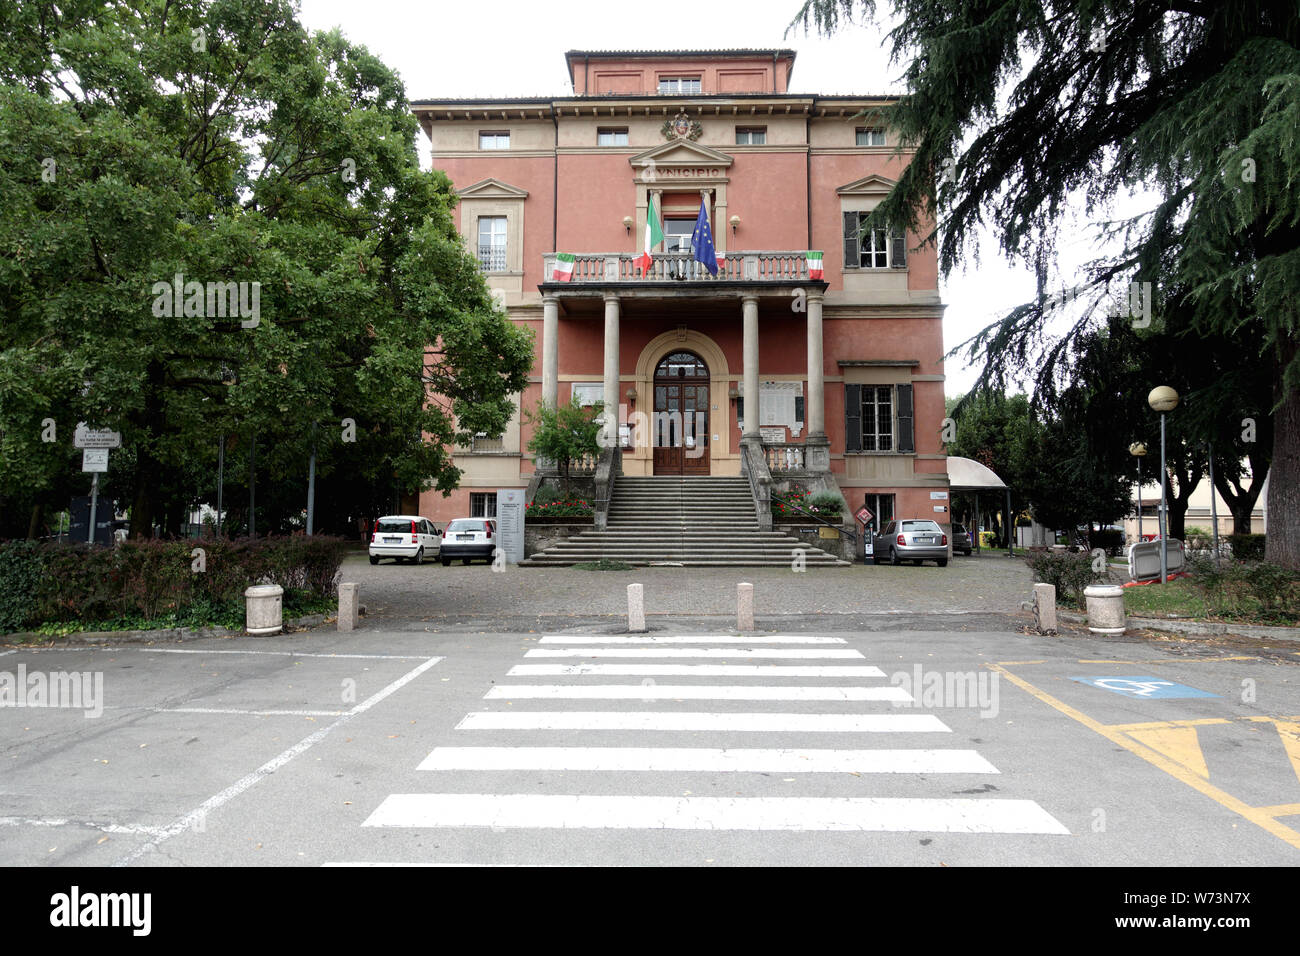 Bibbiano, Reggio Emilia (Italie) - 08/01/2019 : Le bâtiment qui abrite la municipalité de Bibbiano Banque D'Images